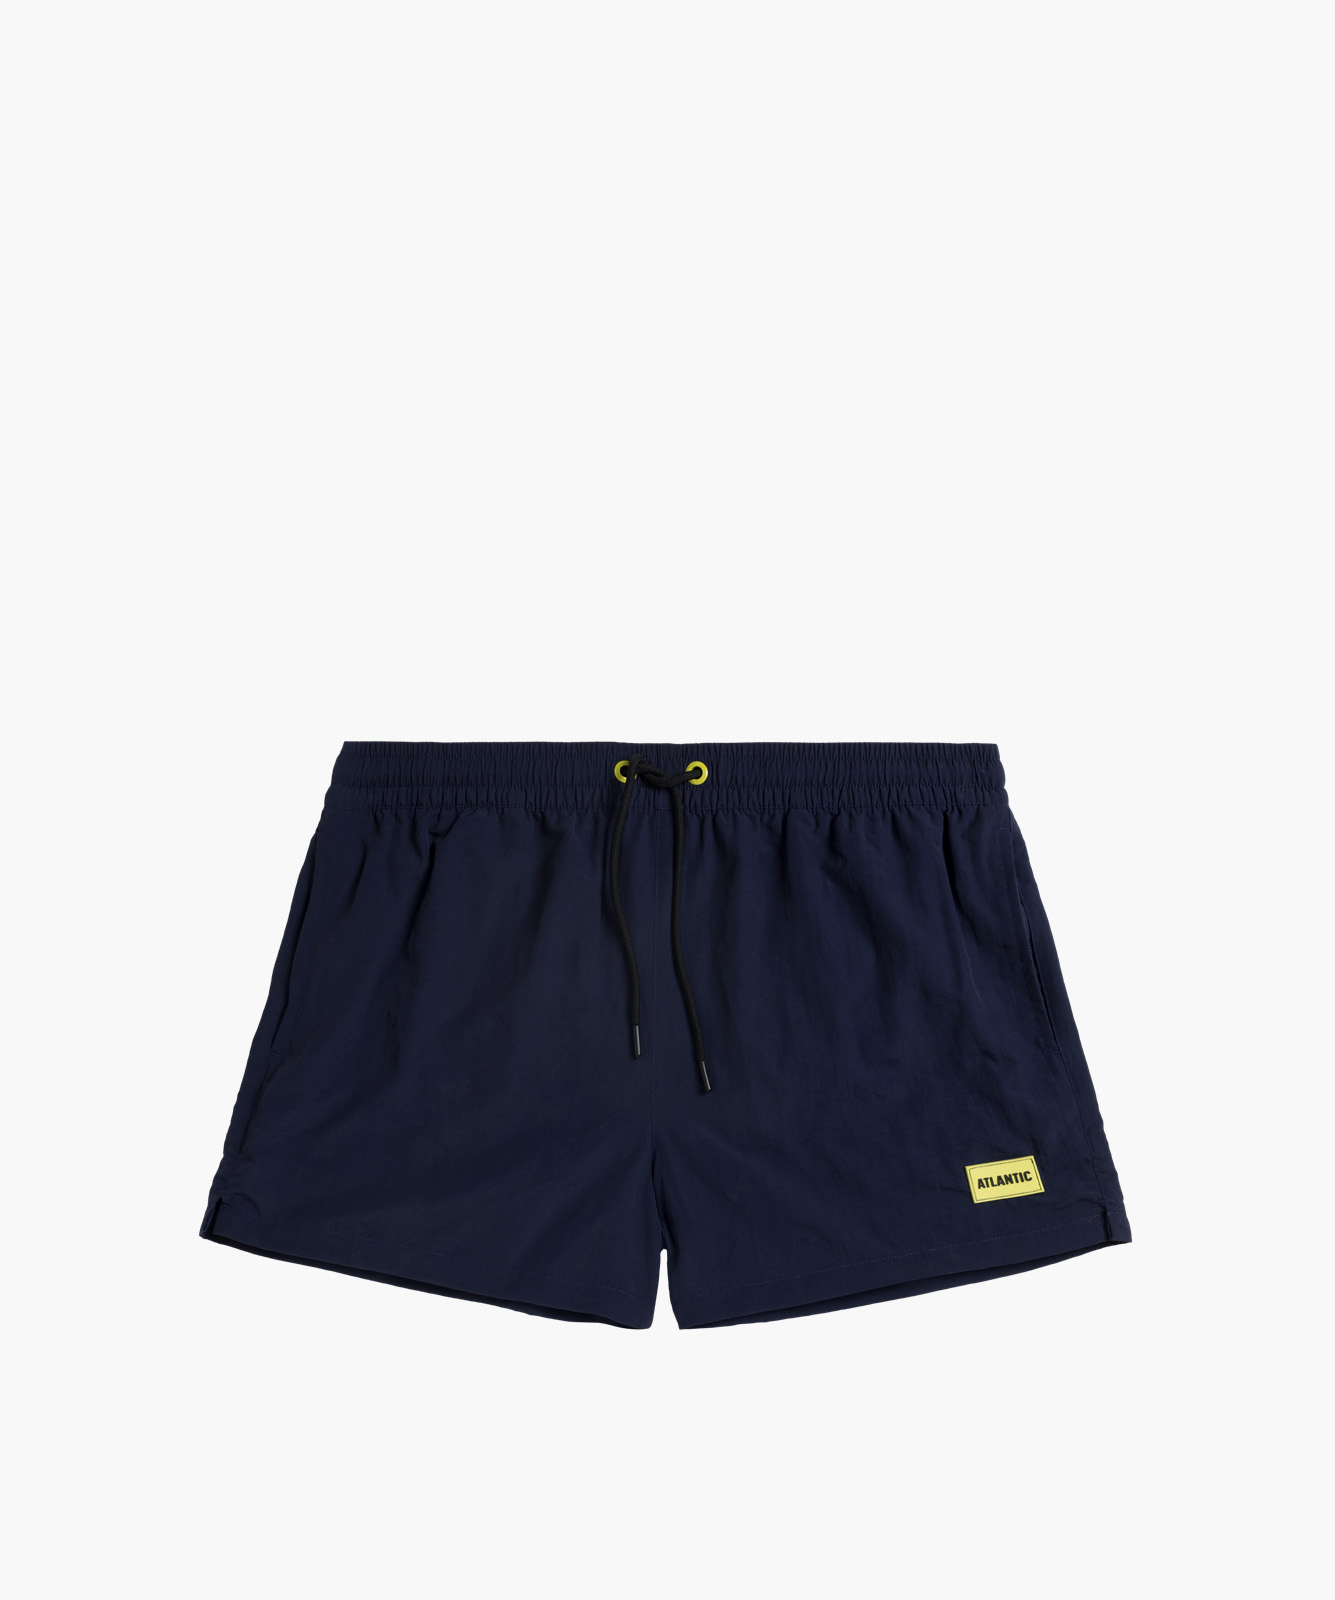 Men's Short Beach Shorts ATLANTIC - Navy Blue